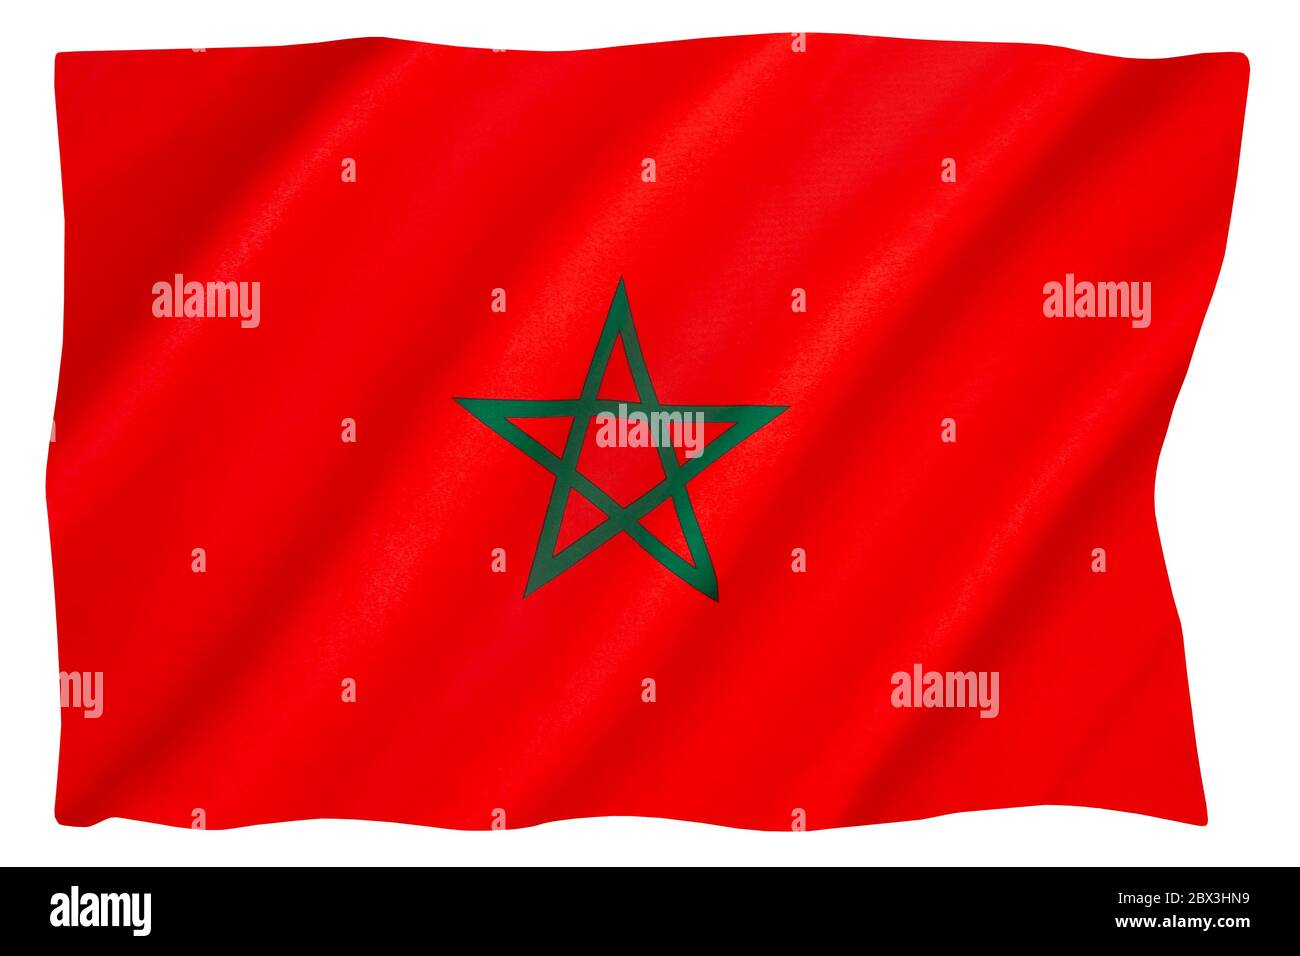 La bandera de Marruecos - Rojo tiene una importancia histórica considerable en Marruecos, proclamando la caída de la dinastía real alaouita. Foto de stock